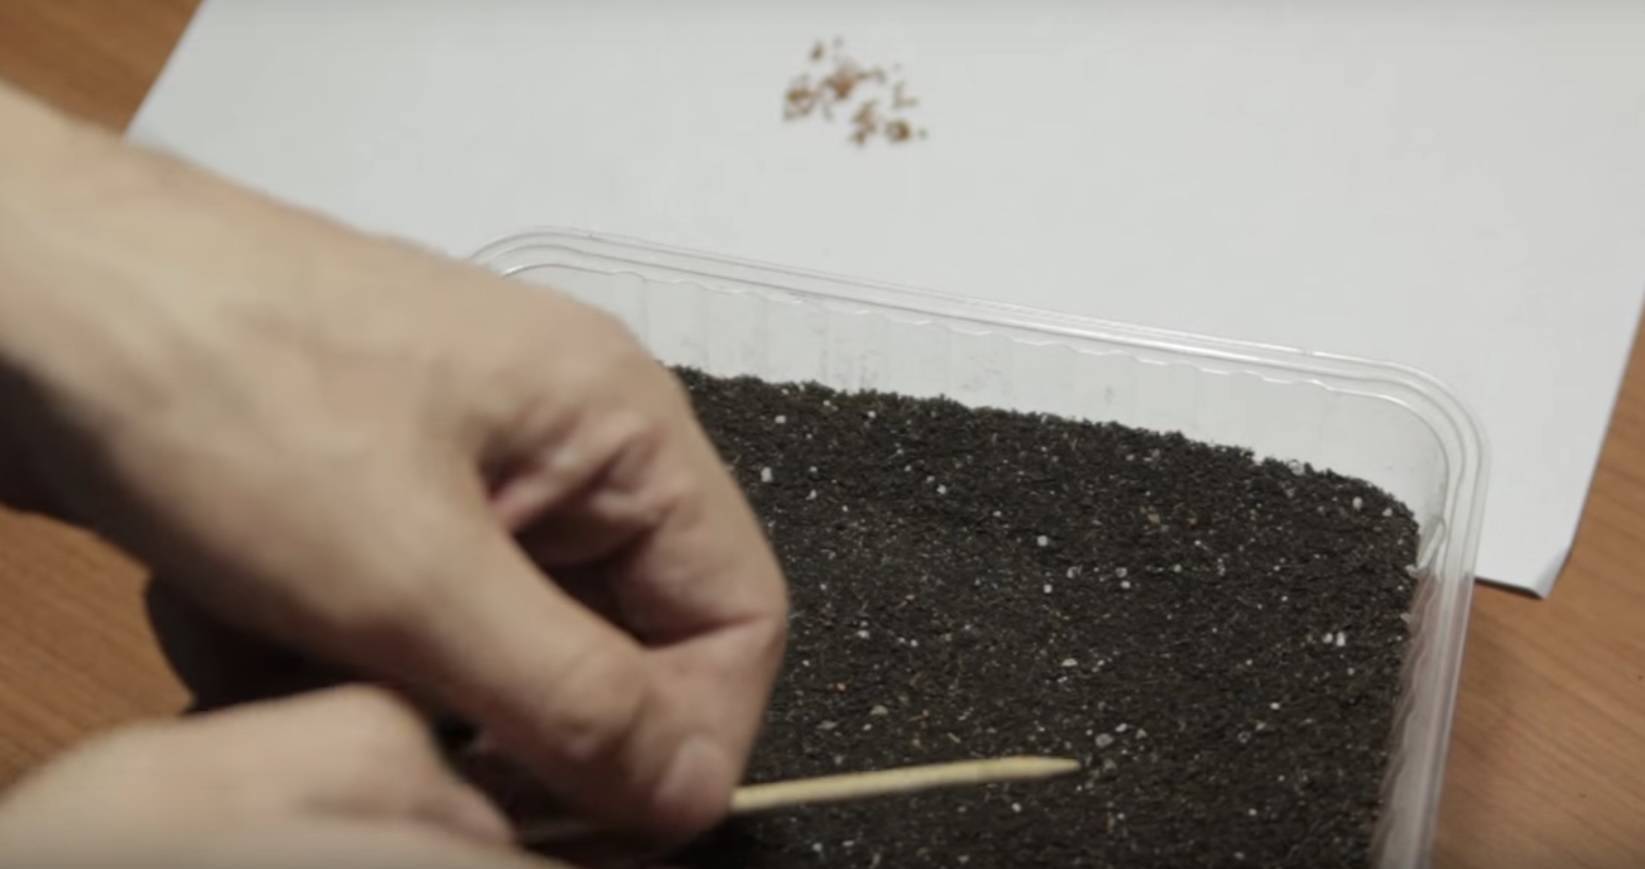 Выращивание земляники из семян: основные этапы и правила ухода